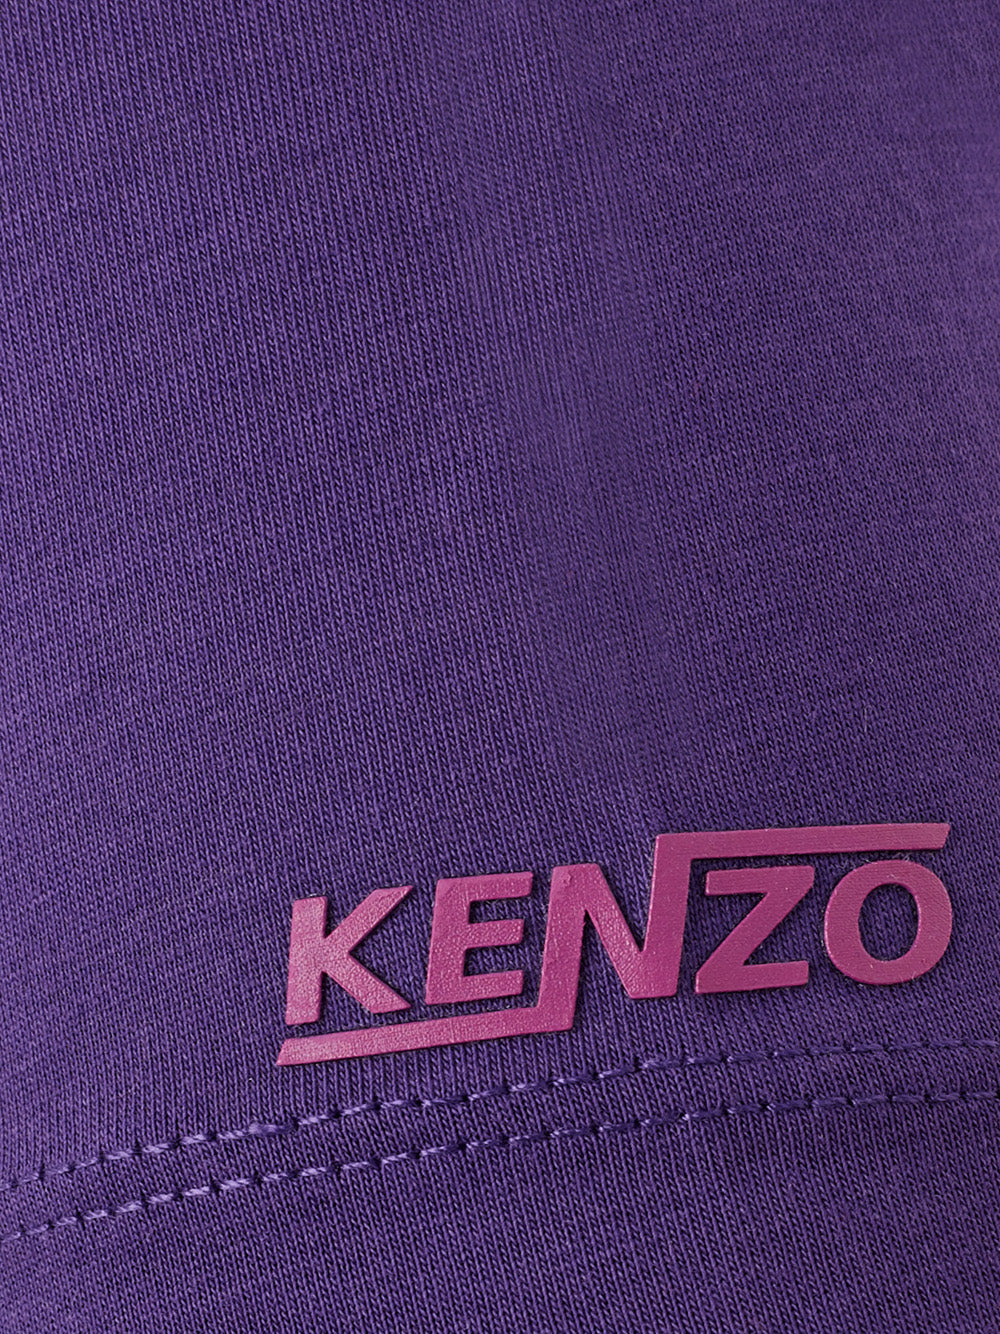 Camiseta Kenzo con estampado mágico